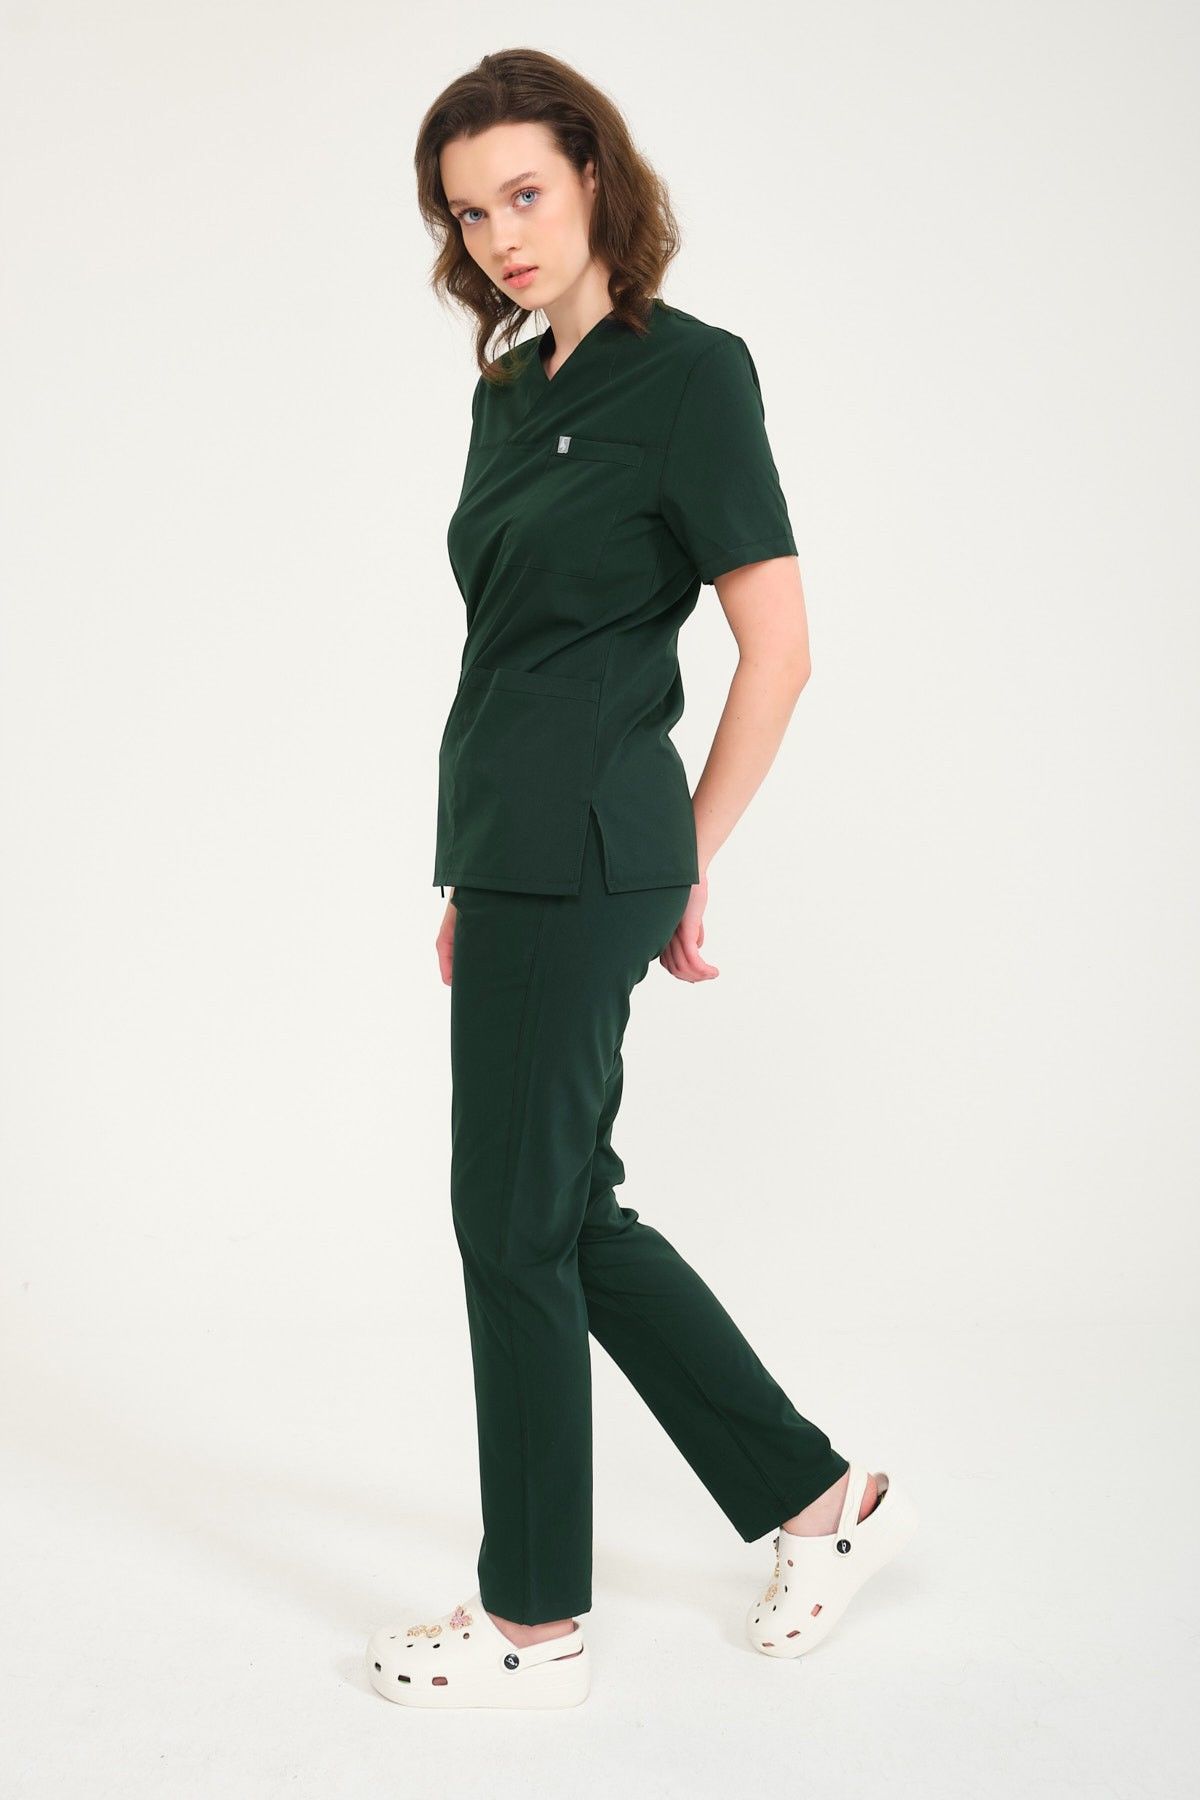 Ördek Yeşil Likralı Zarf Yaka Scrubs Doktor Hemşire Forması Takım